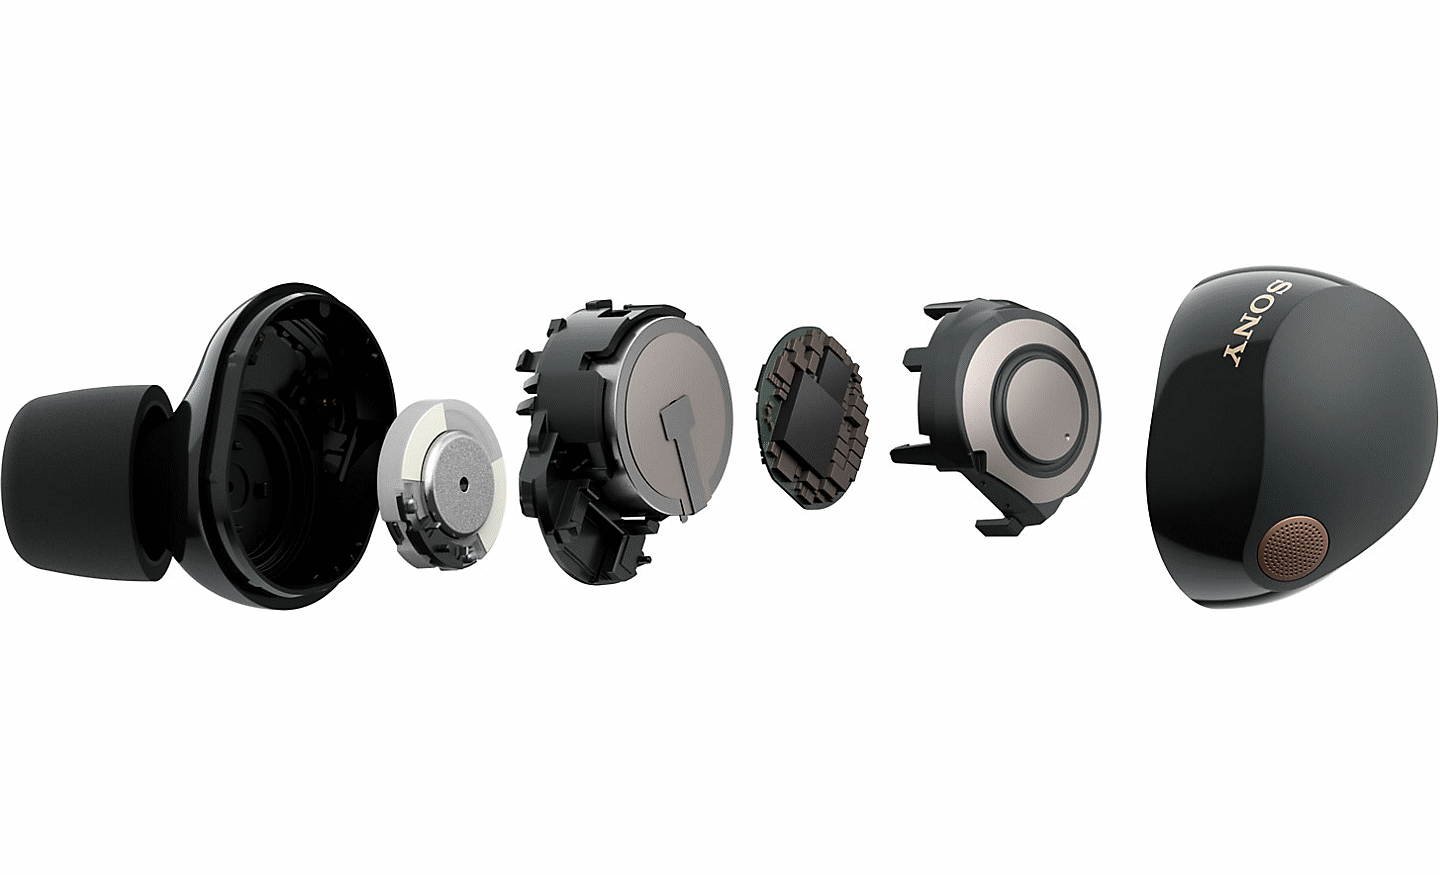 Bild der WF-1000XM5 Kopfhörer, auf dem die internen Komponenten in einzelne, nebeneinander liegende Teile zerlegt sind